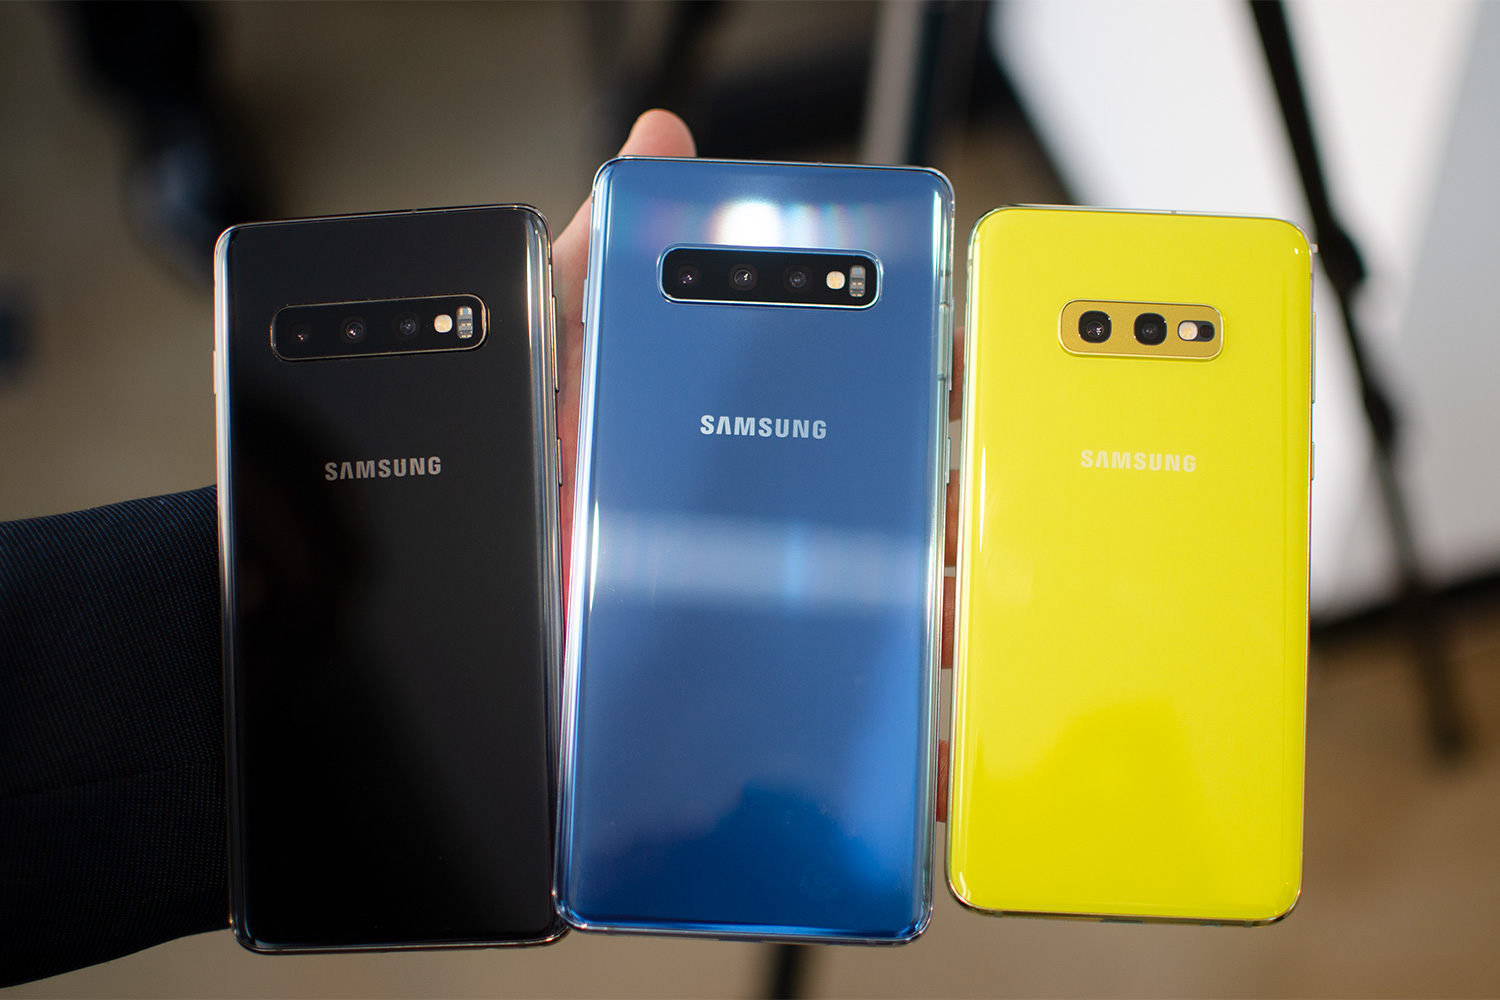 Samsung Galaxy S10 Vs. S10 Plus Vs. S10e Vs. S10 5G | Comparison